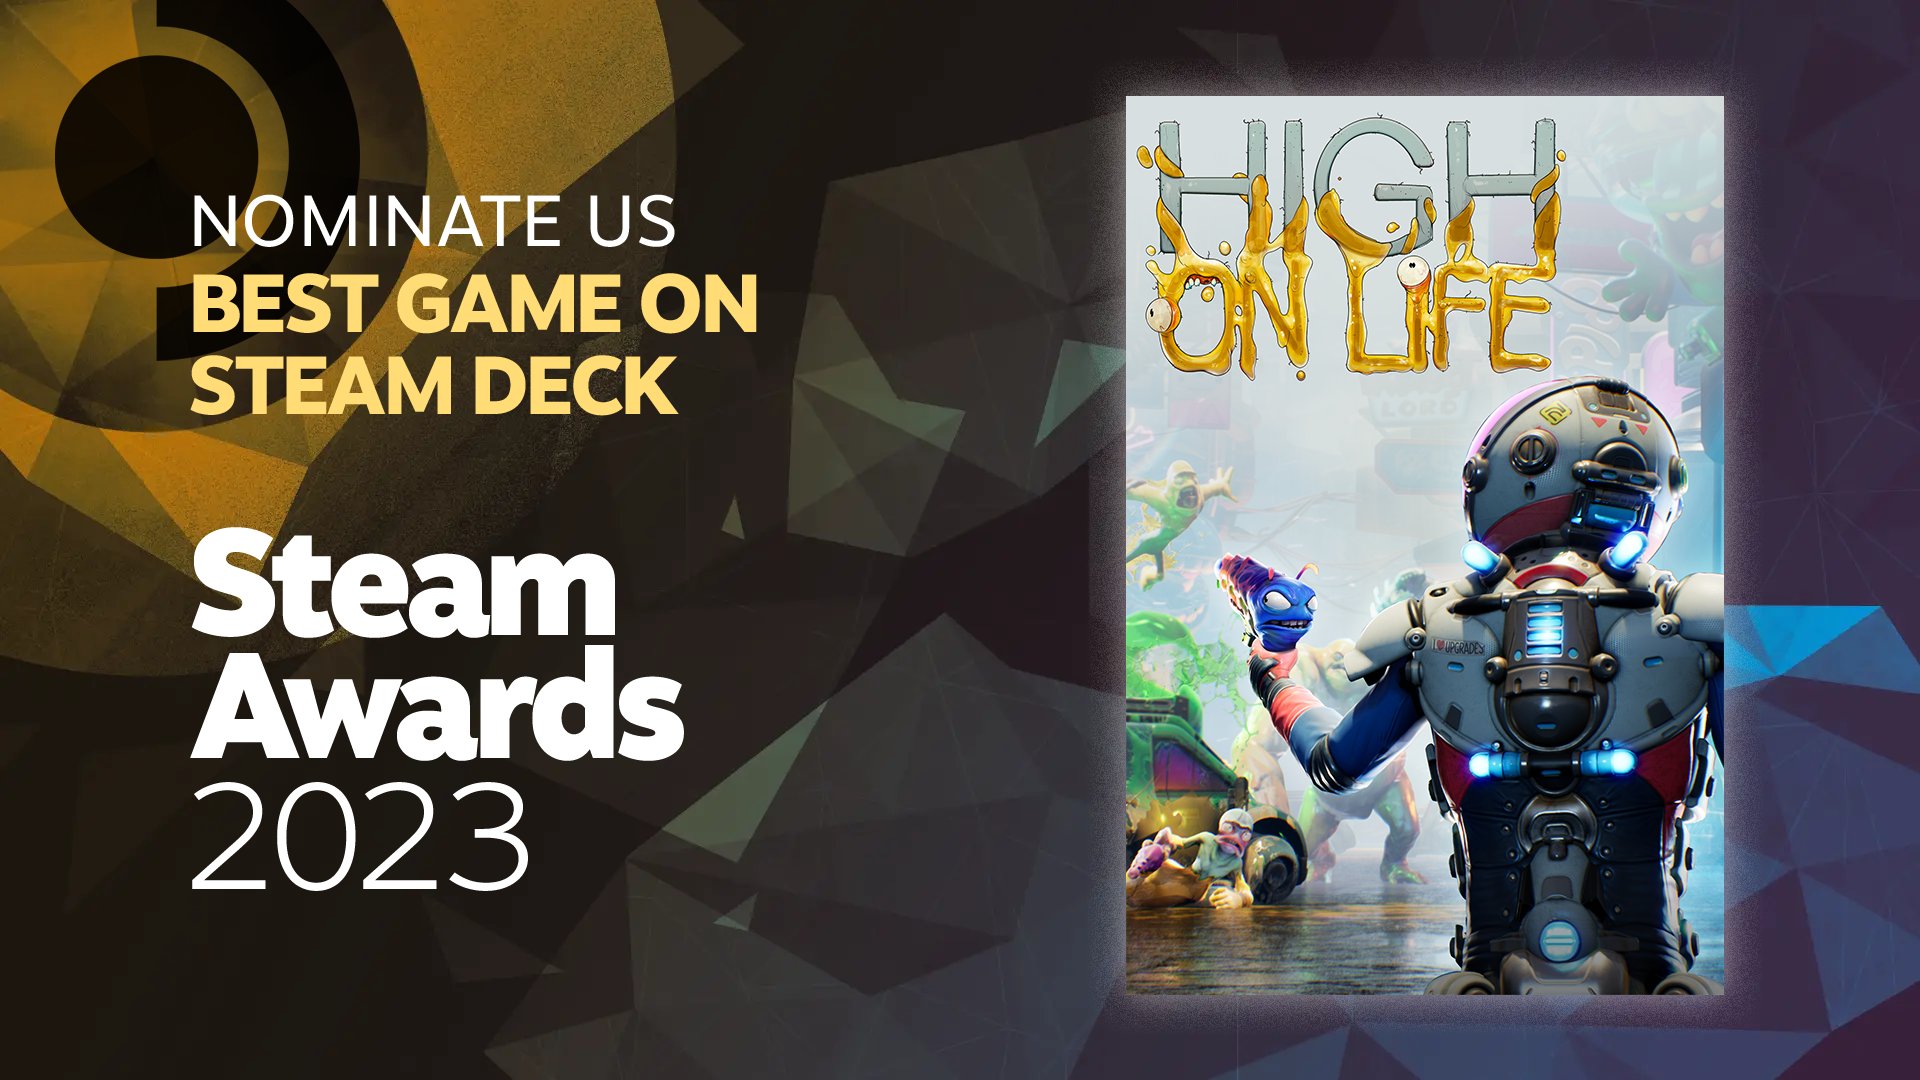 High On Life será lançado em 25 de outubro - XboxEra